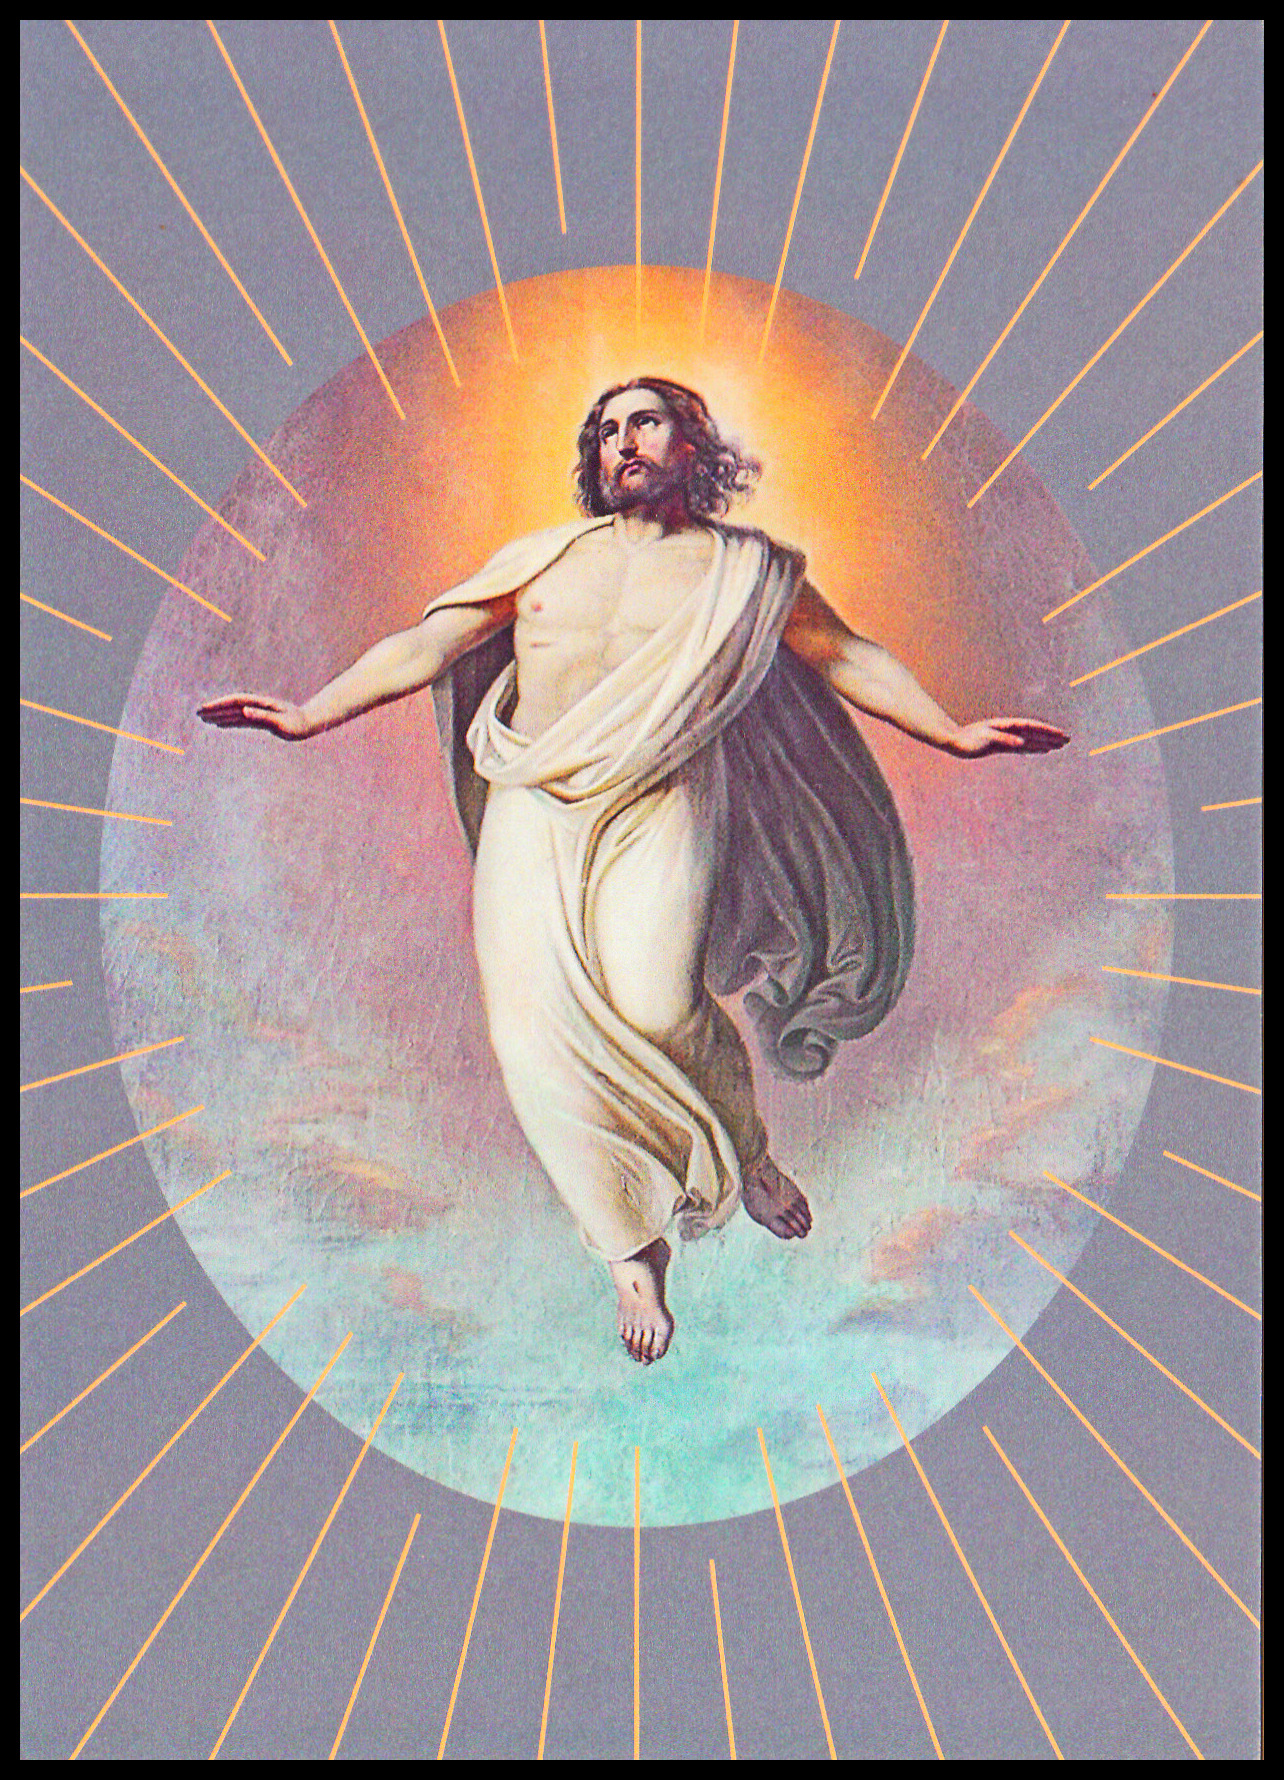 Velikonoce 2022 - Kristologické motivy (celinová pohlednice) 